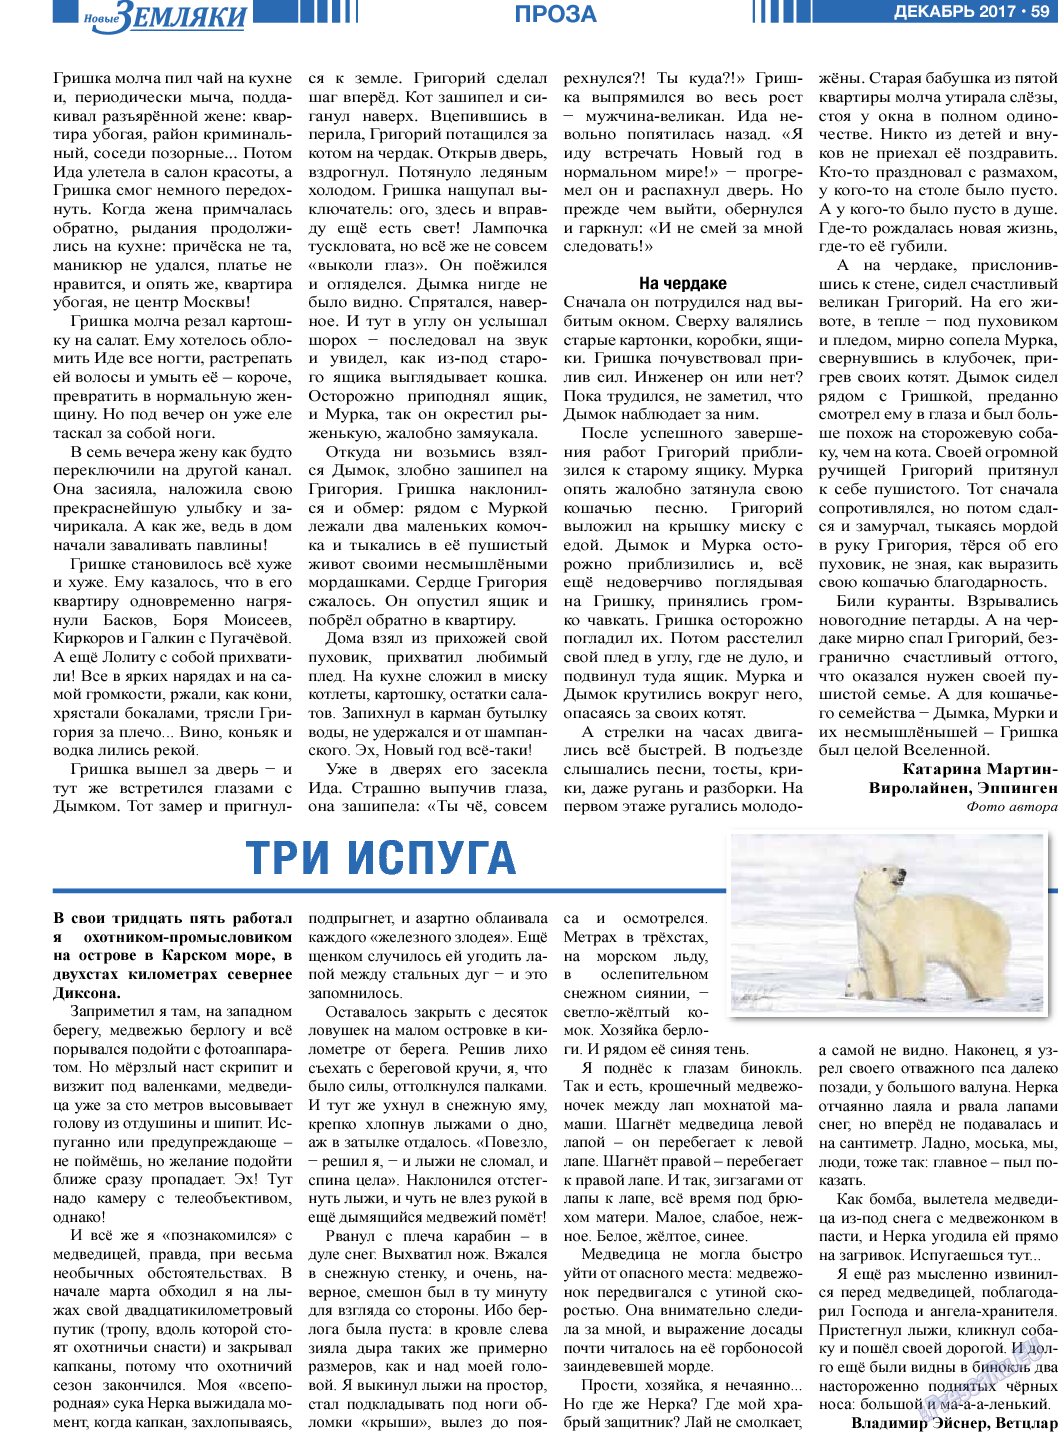 Новые Земляки, газета. 2017 №12 стр.59